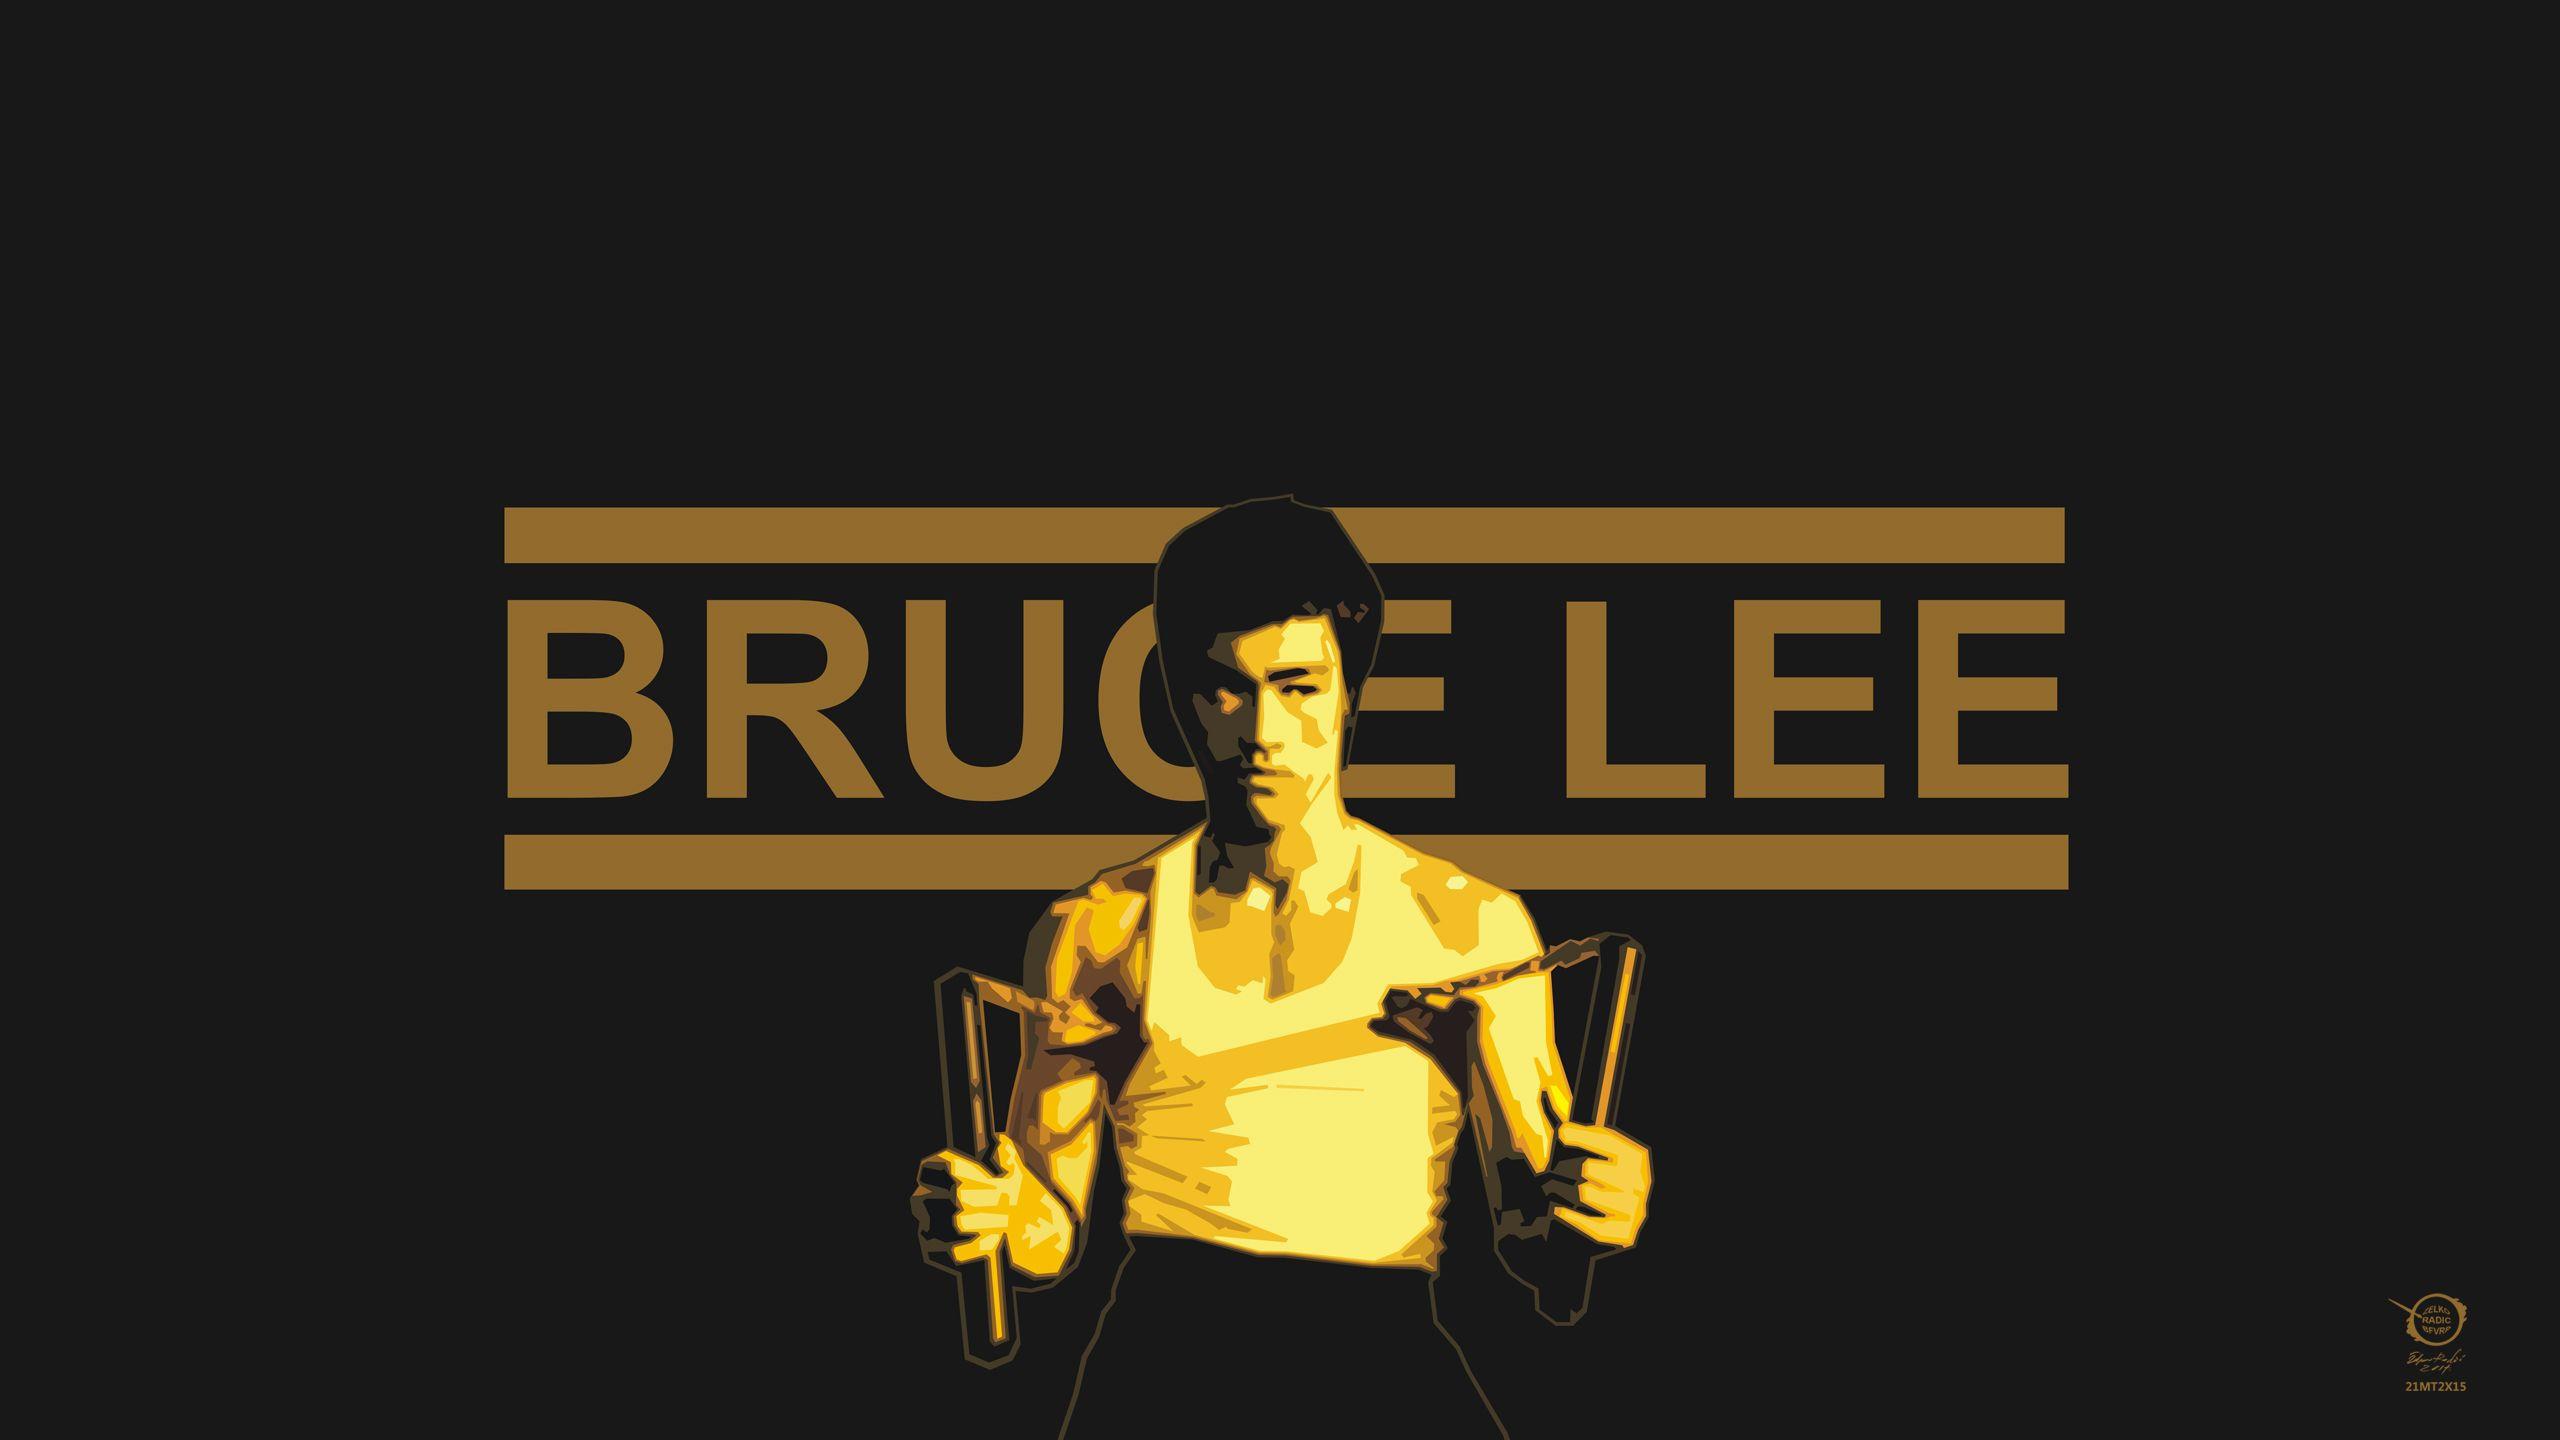 HD Bruce Lee Image Collection for Desktop